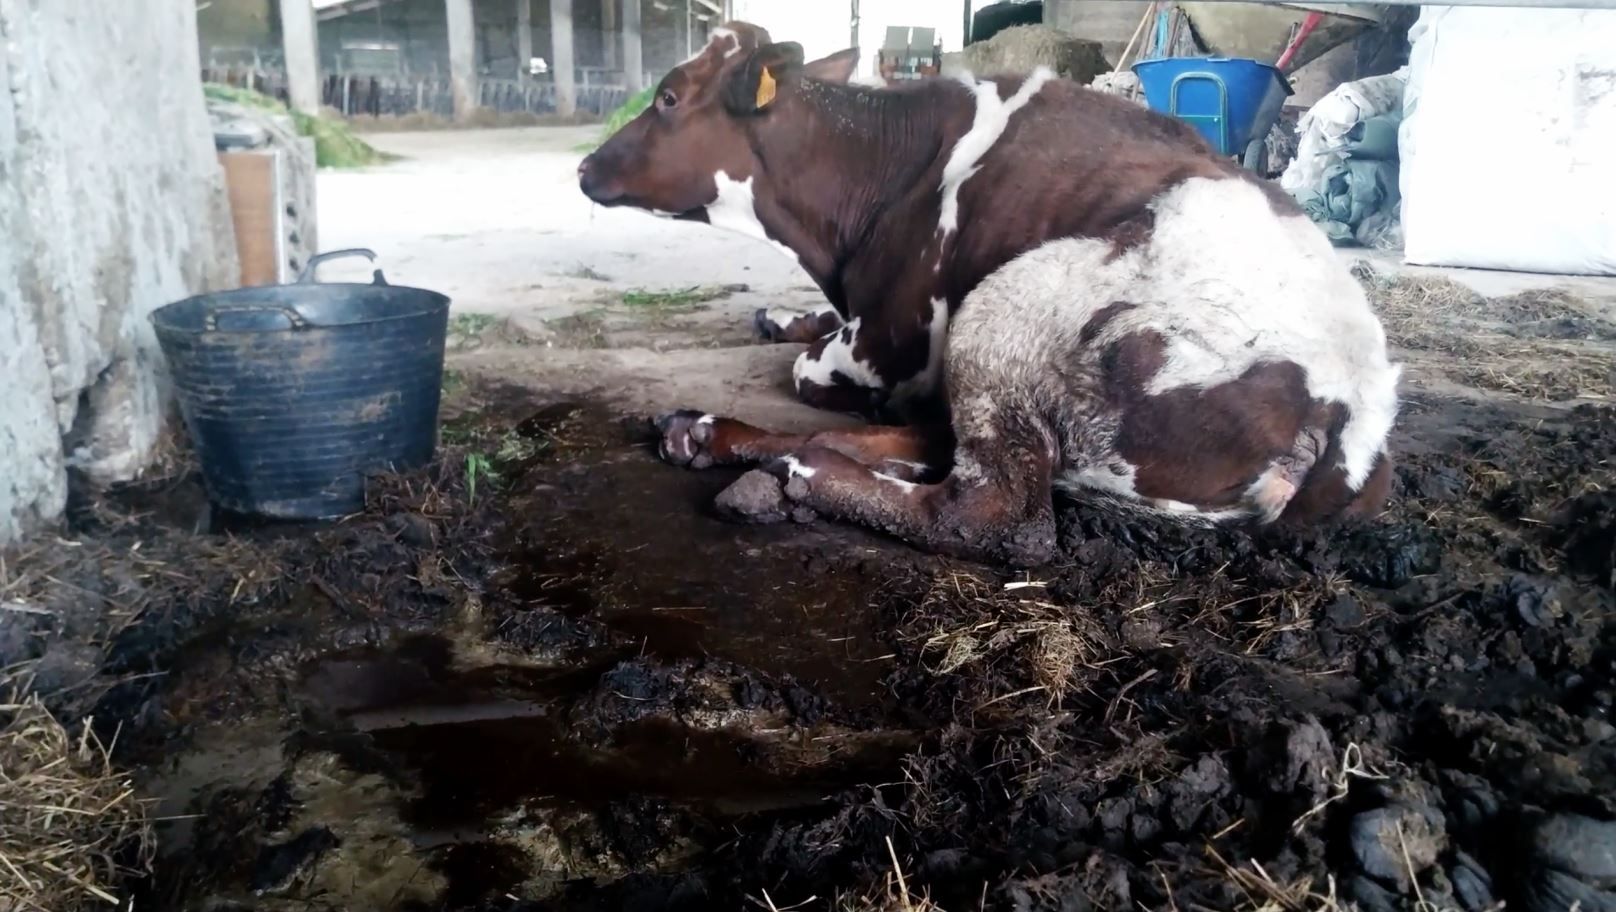 Vaca de una de las instalaciones tumbada entre excrementos / Foto: Equalia